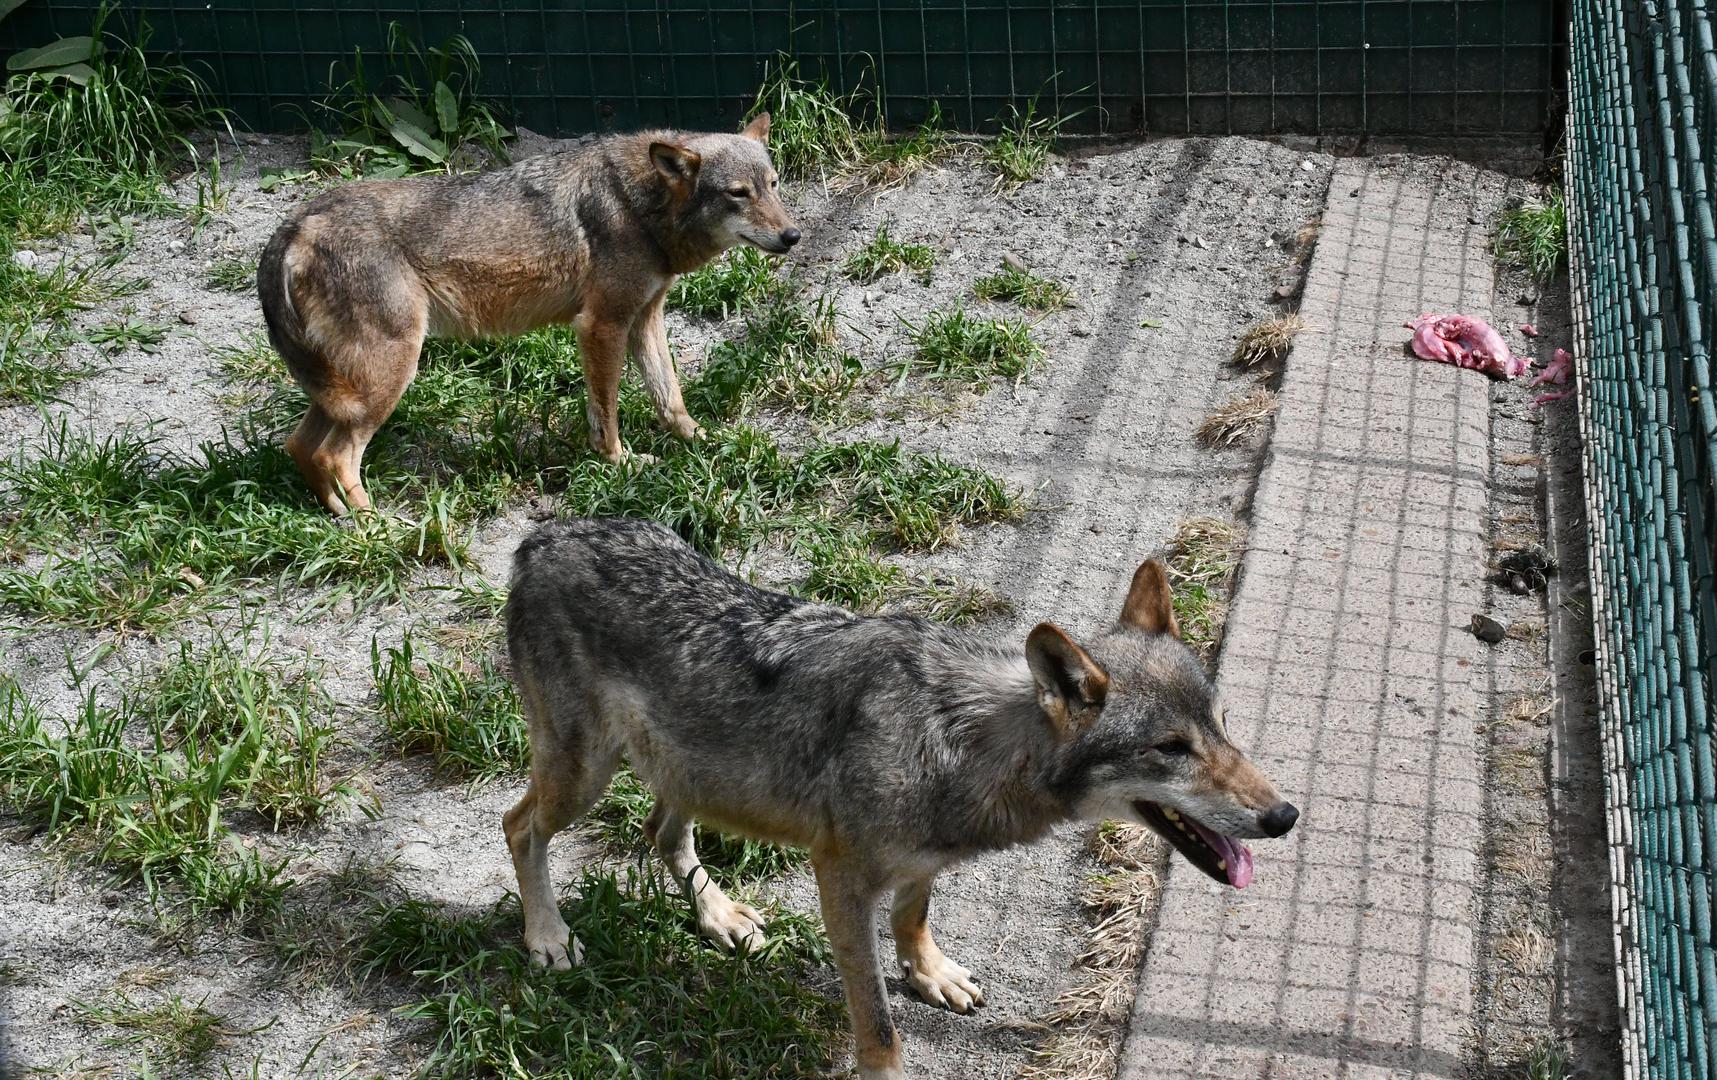 Uz nju, novi stanovnici tog ZOO-a su i vuk i vučica spašeni iz nehumanih uvjeta u kojima ih je držao splitski psihijatar.

